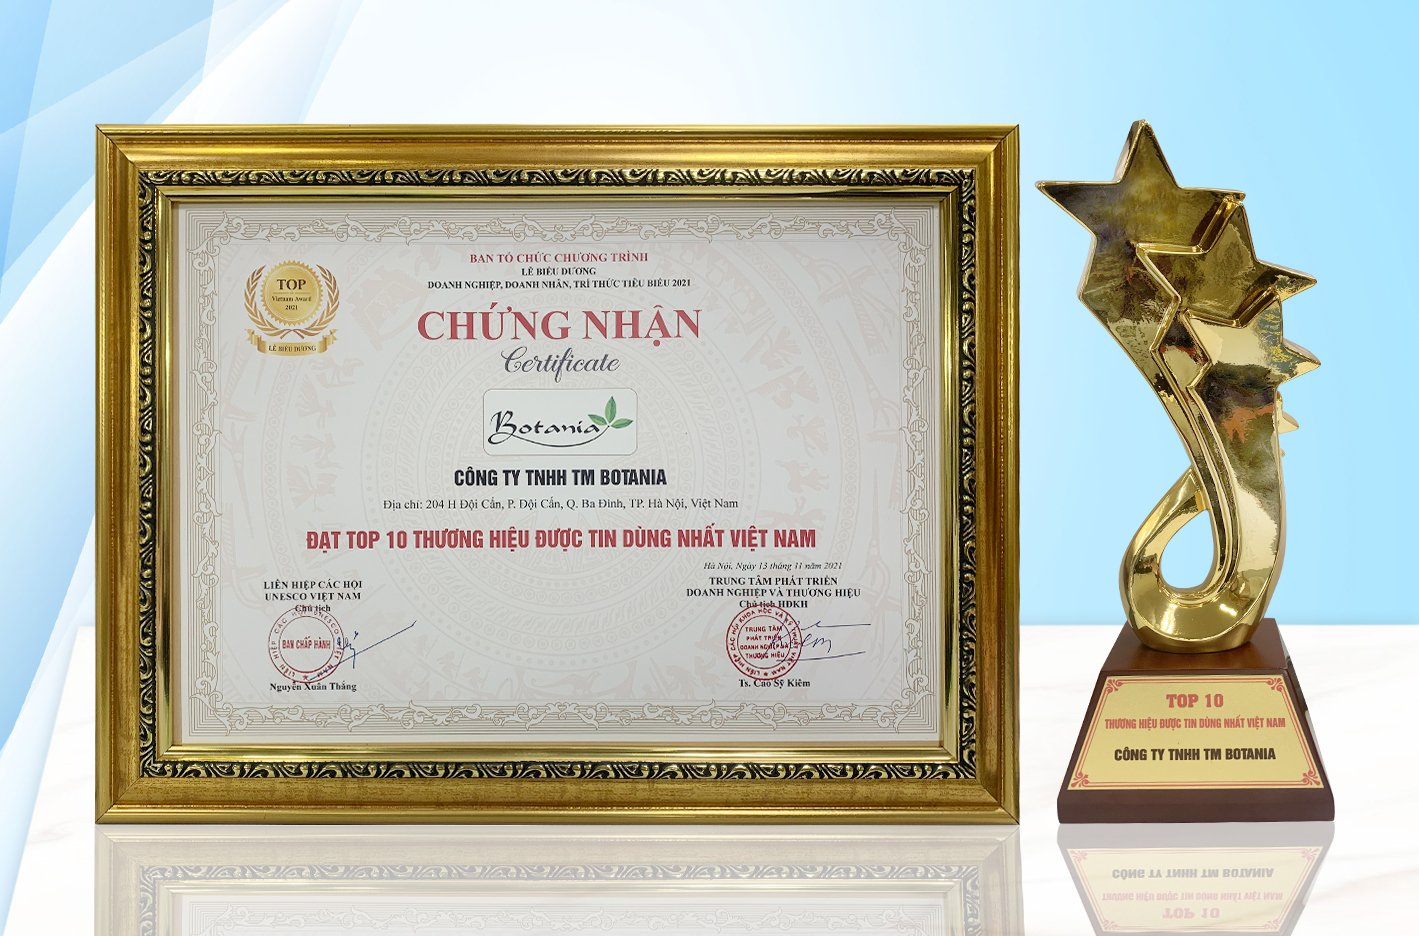 Giải thưởng “Top 10 Thương hiệu được tin dùng nhất Việt Nam”